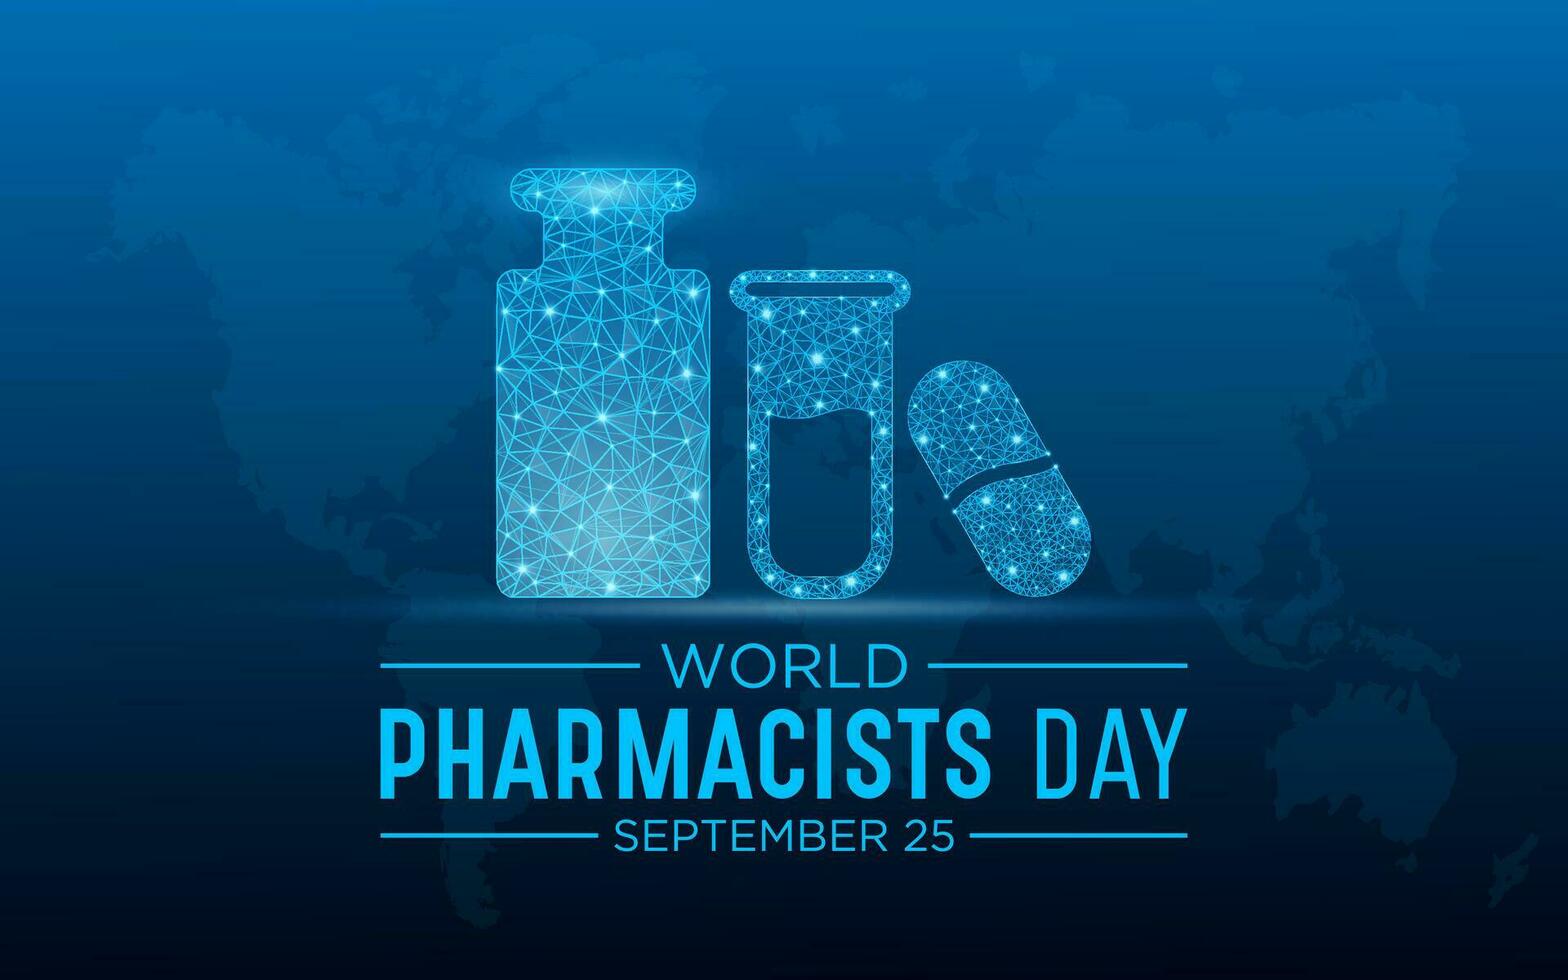 värld apotekare dag på september 25 är en firande av varje apotekare, farmaceutisk forskare. låg poly stil design. geometrisk bakgrund. isolerat vektor illustration.